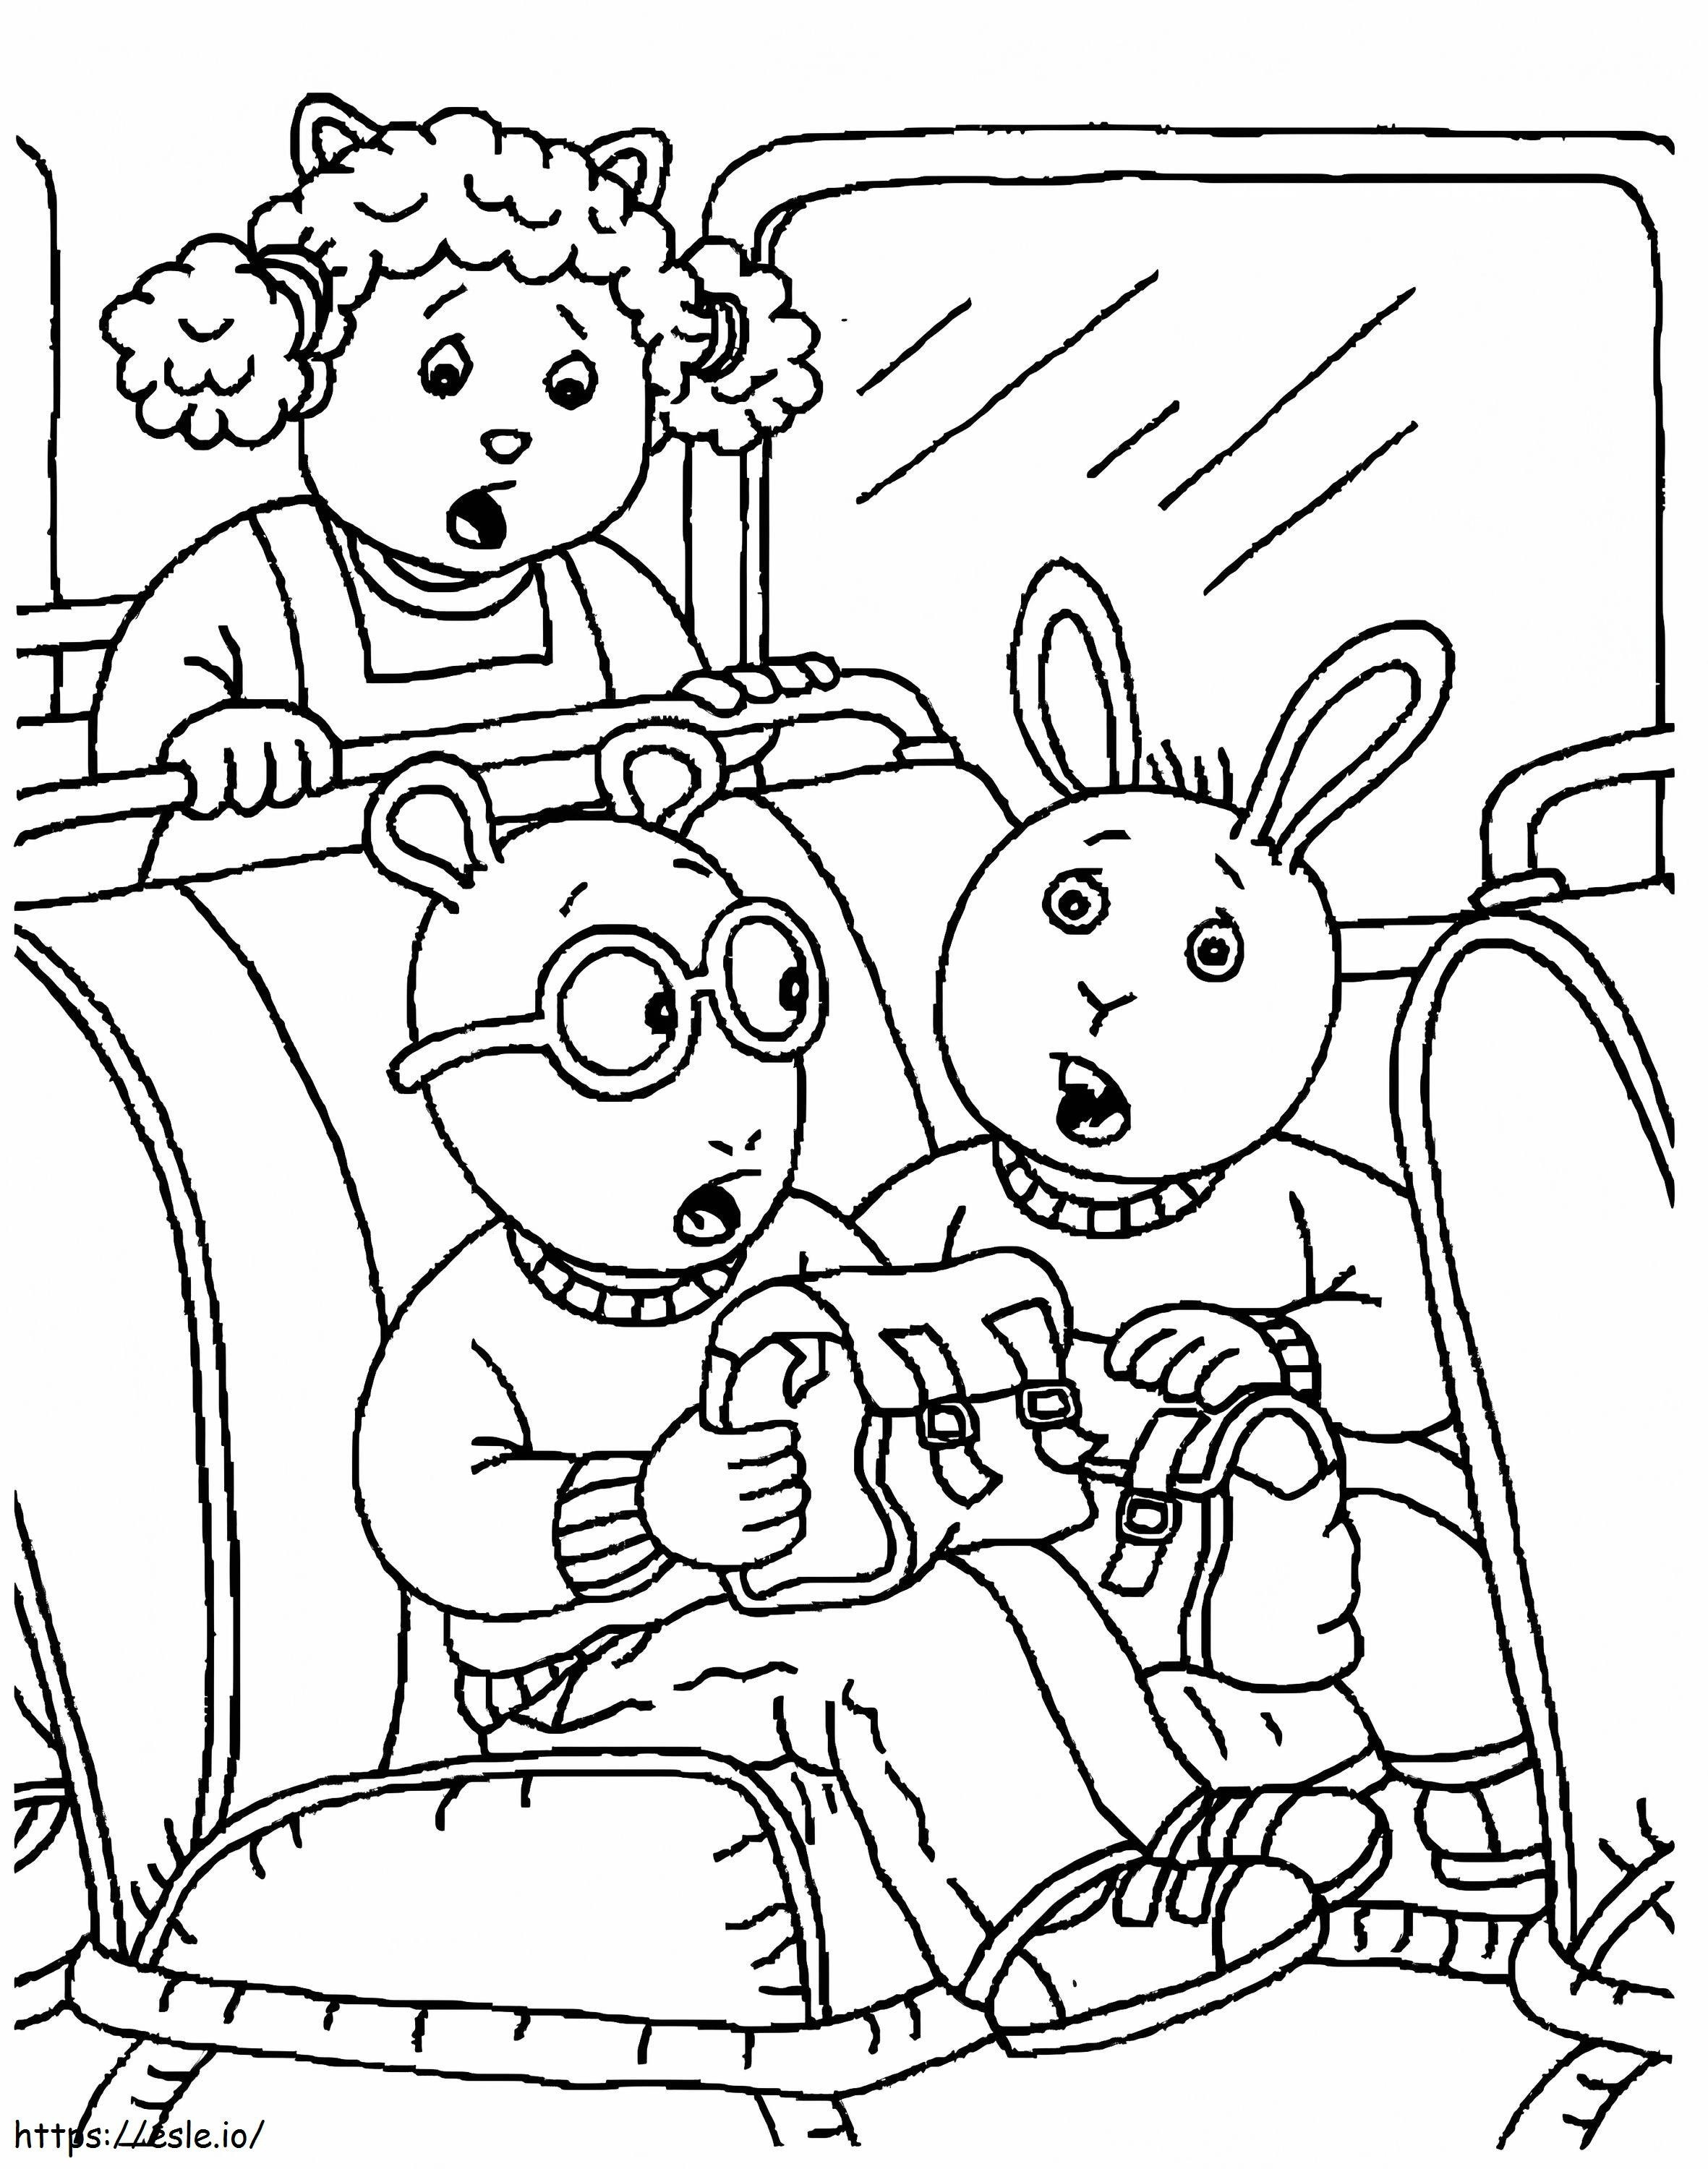 Arthur Read sull'autobus da colorare